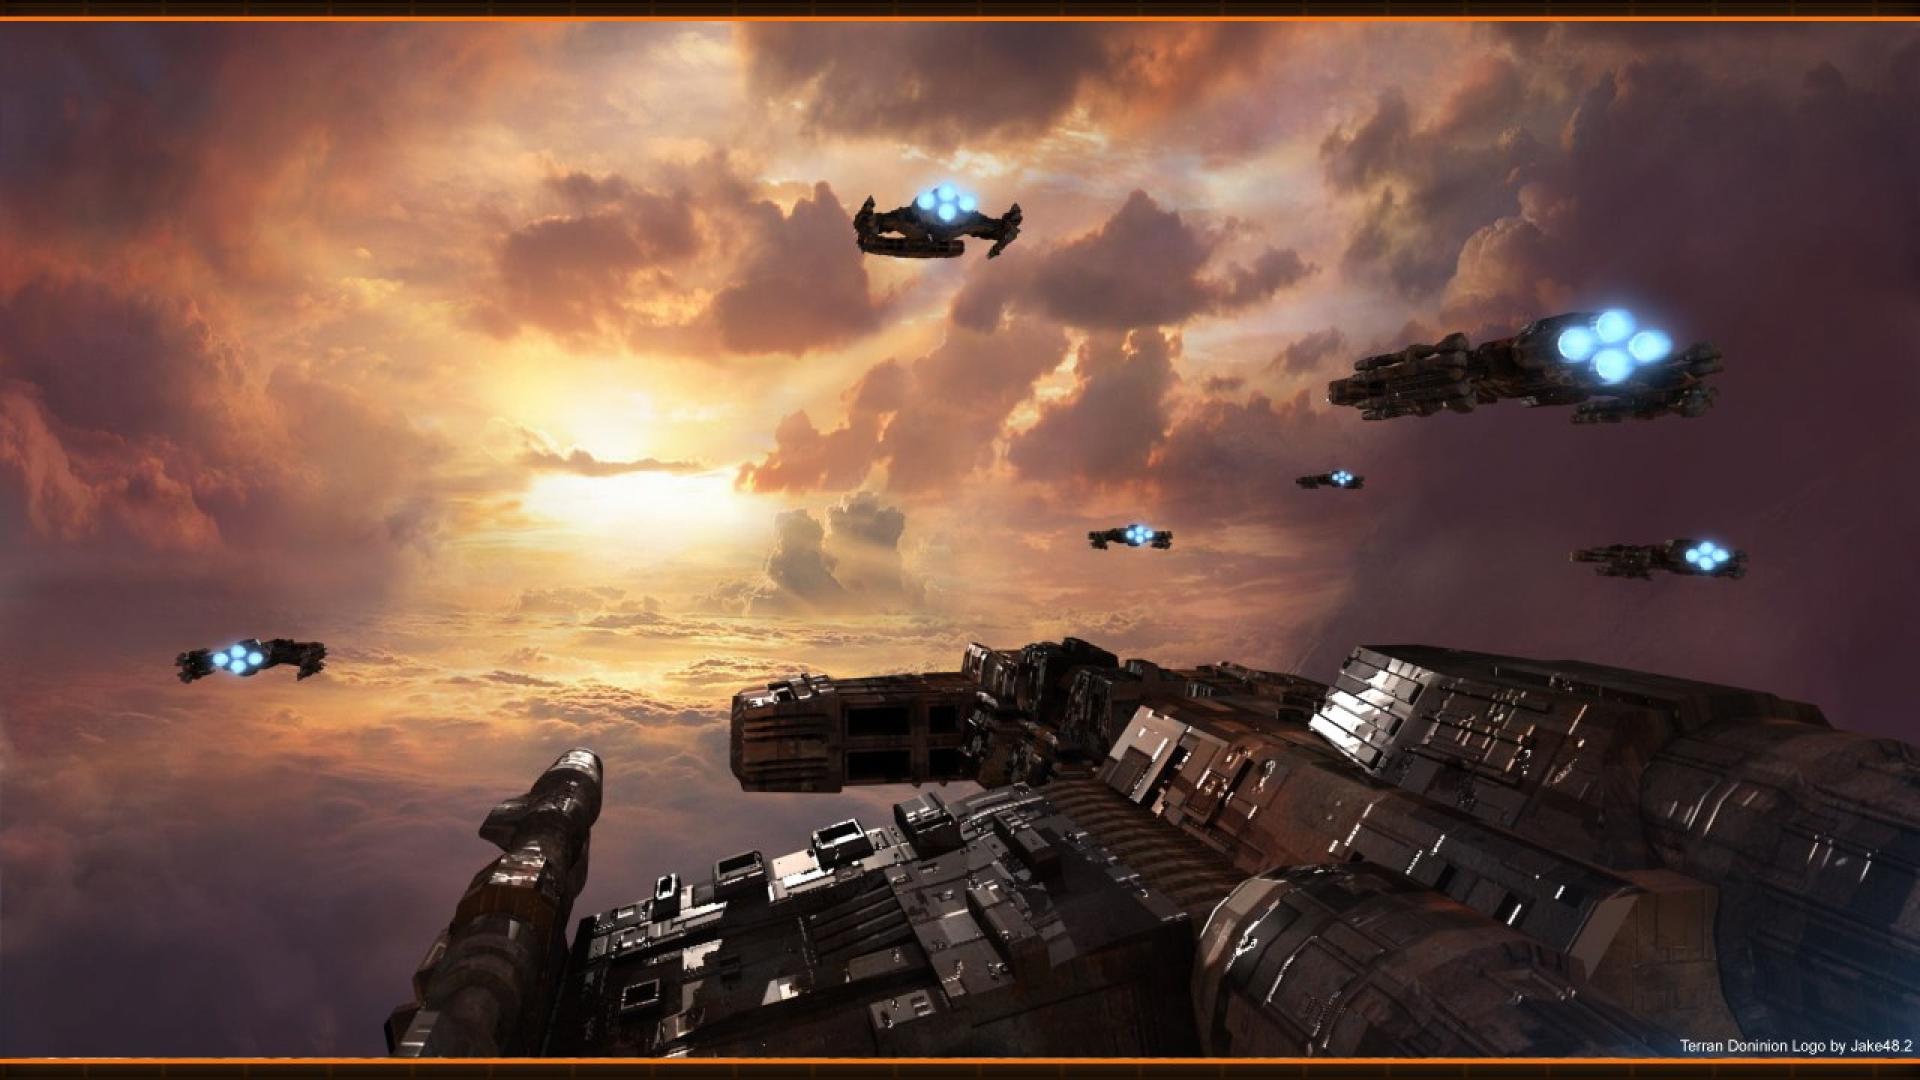 Starcraft song of war games hd wallpaper - - HQ Desktop